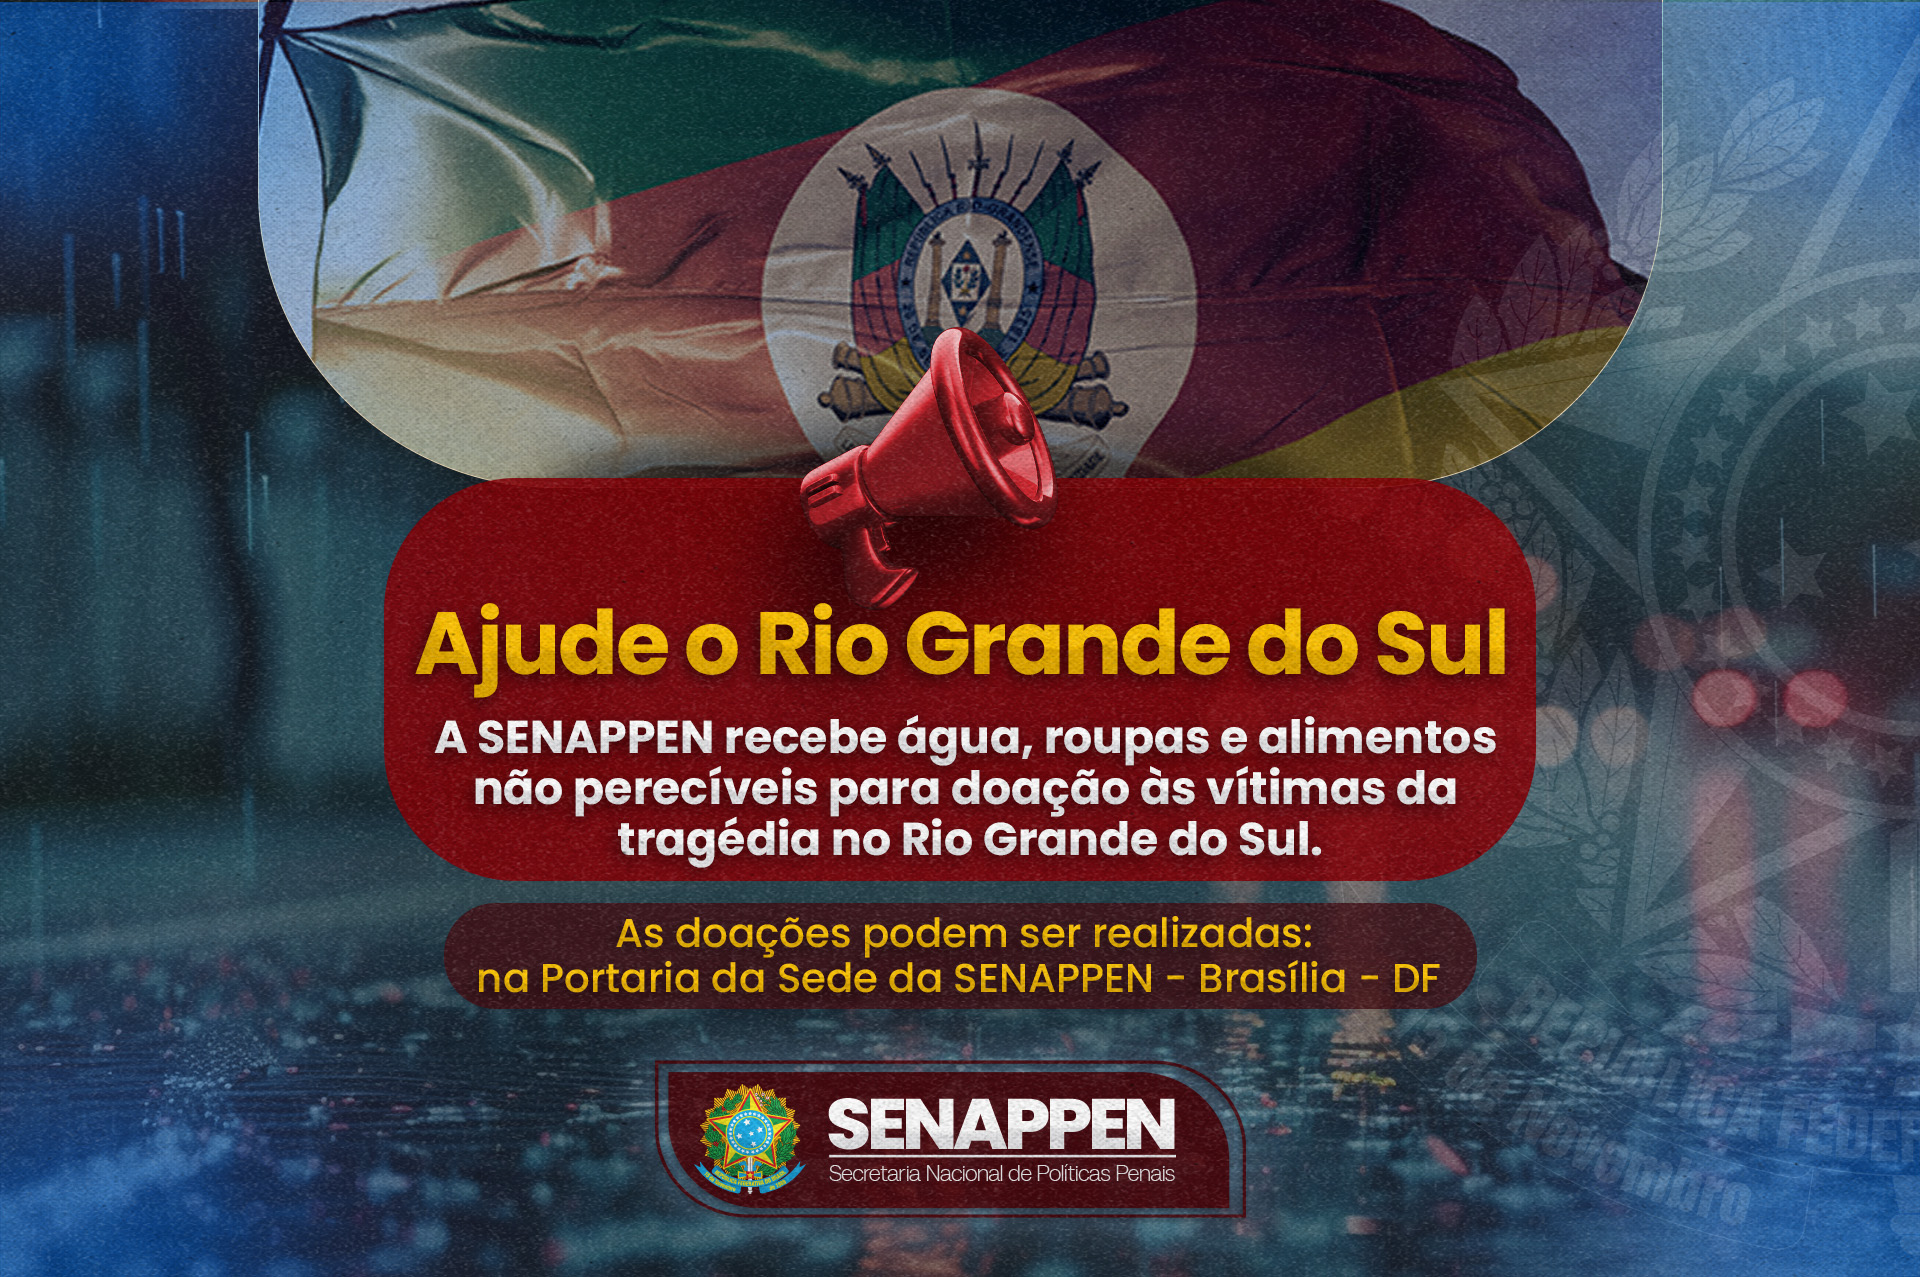 SENAPPEN está arrecadando doações para ajudar as vítimas do Rio Grande do Sul